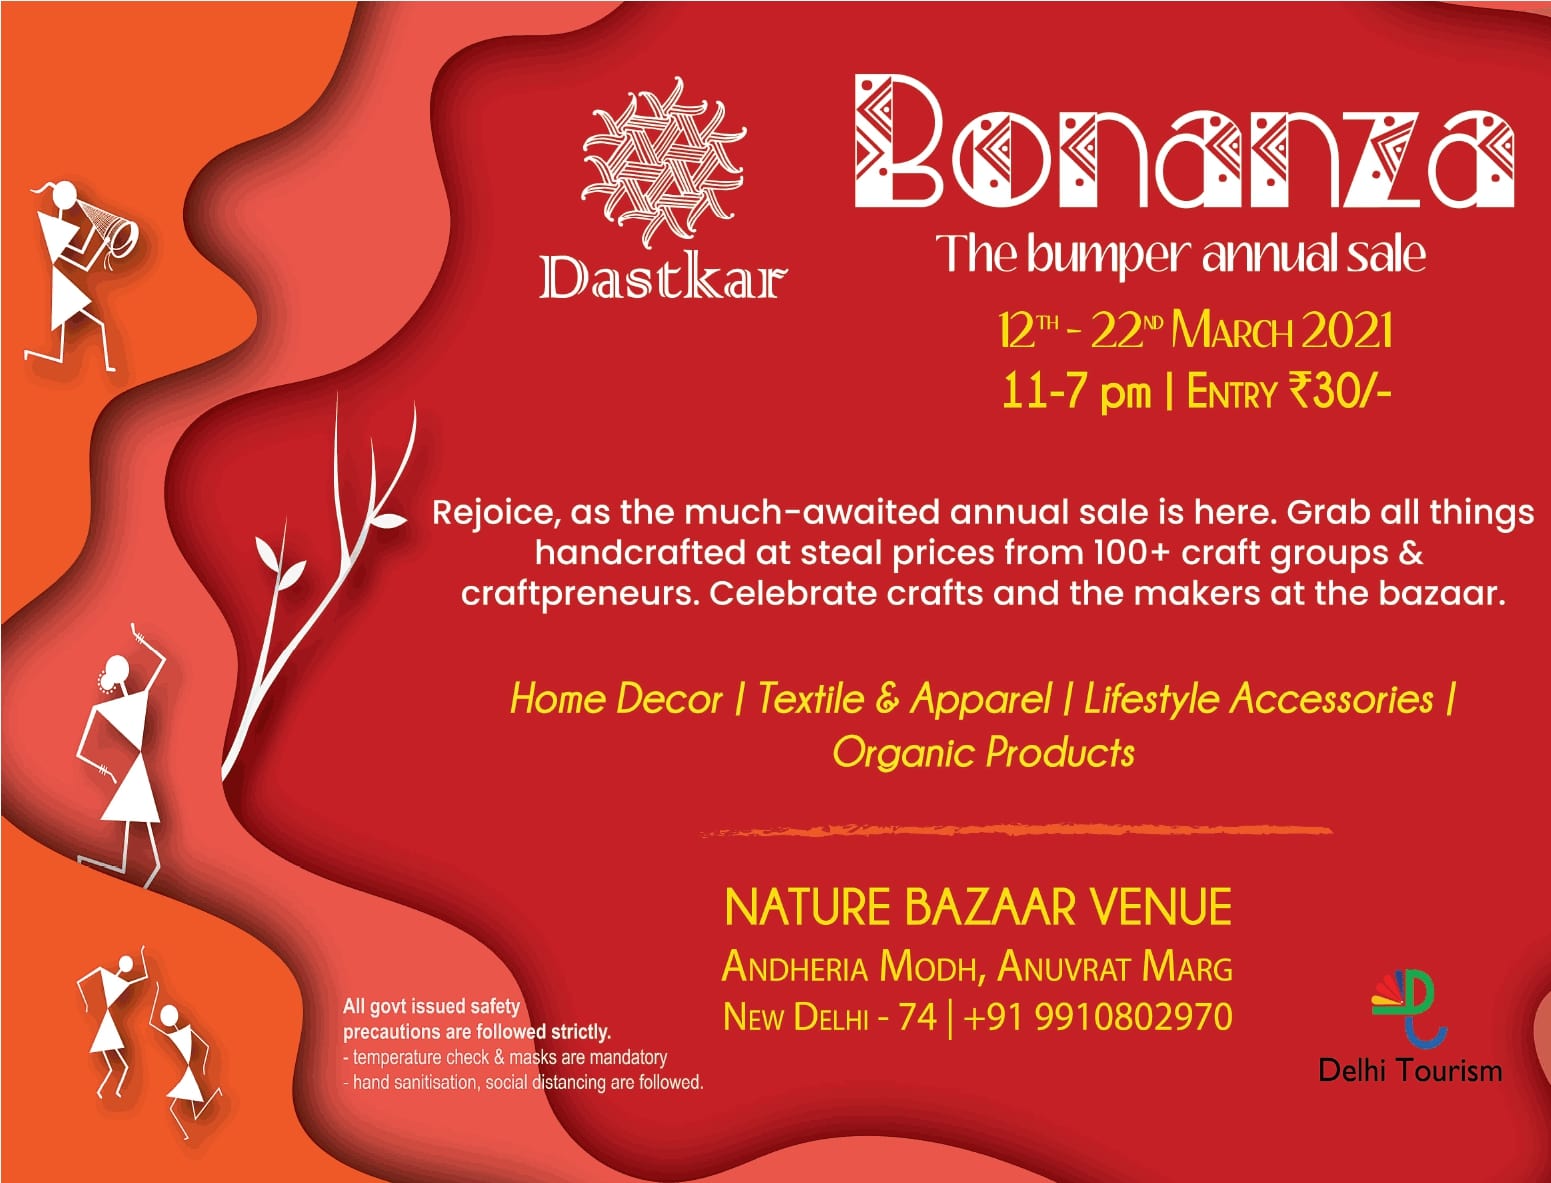 dastkar-bonanza-the-bumper-annual-sale-ad-delhi-times-13-03-2021